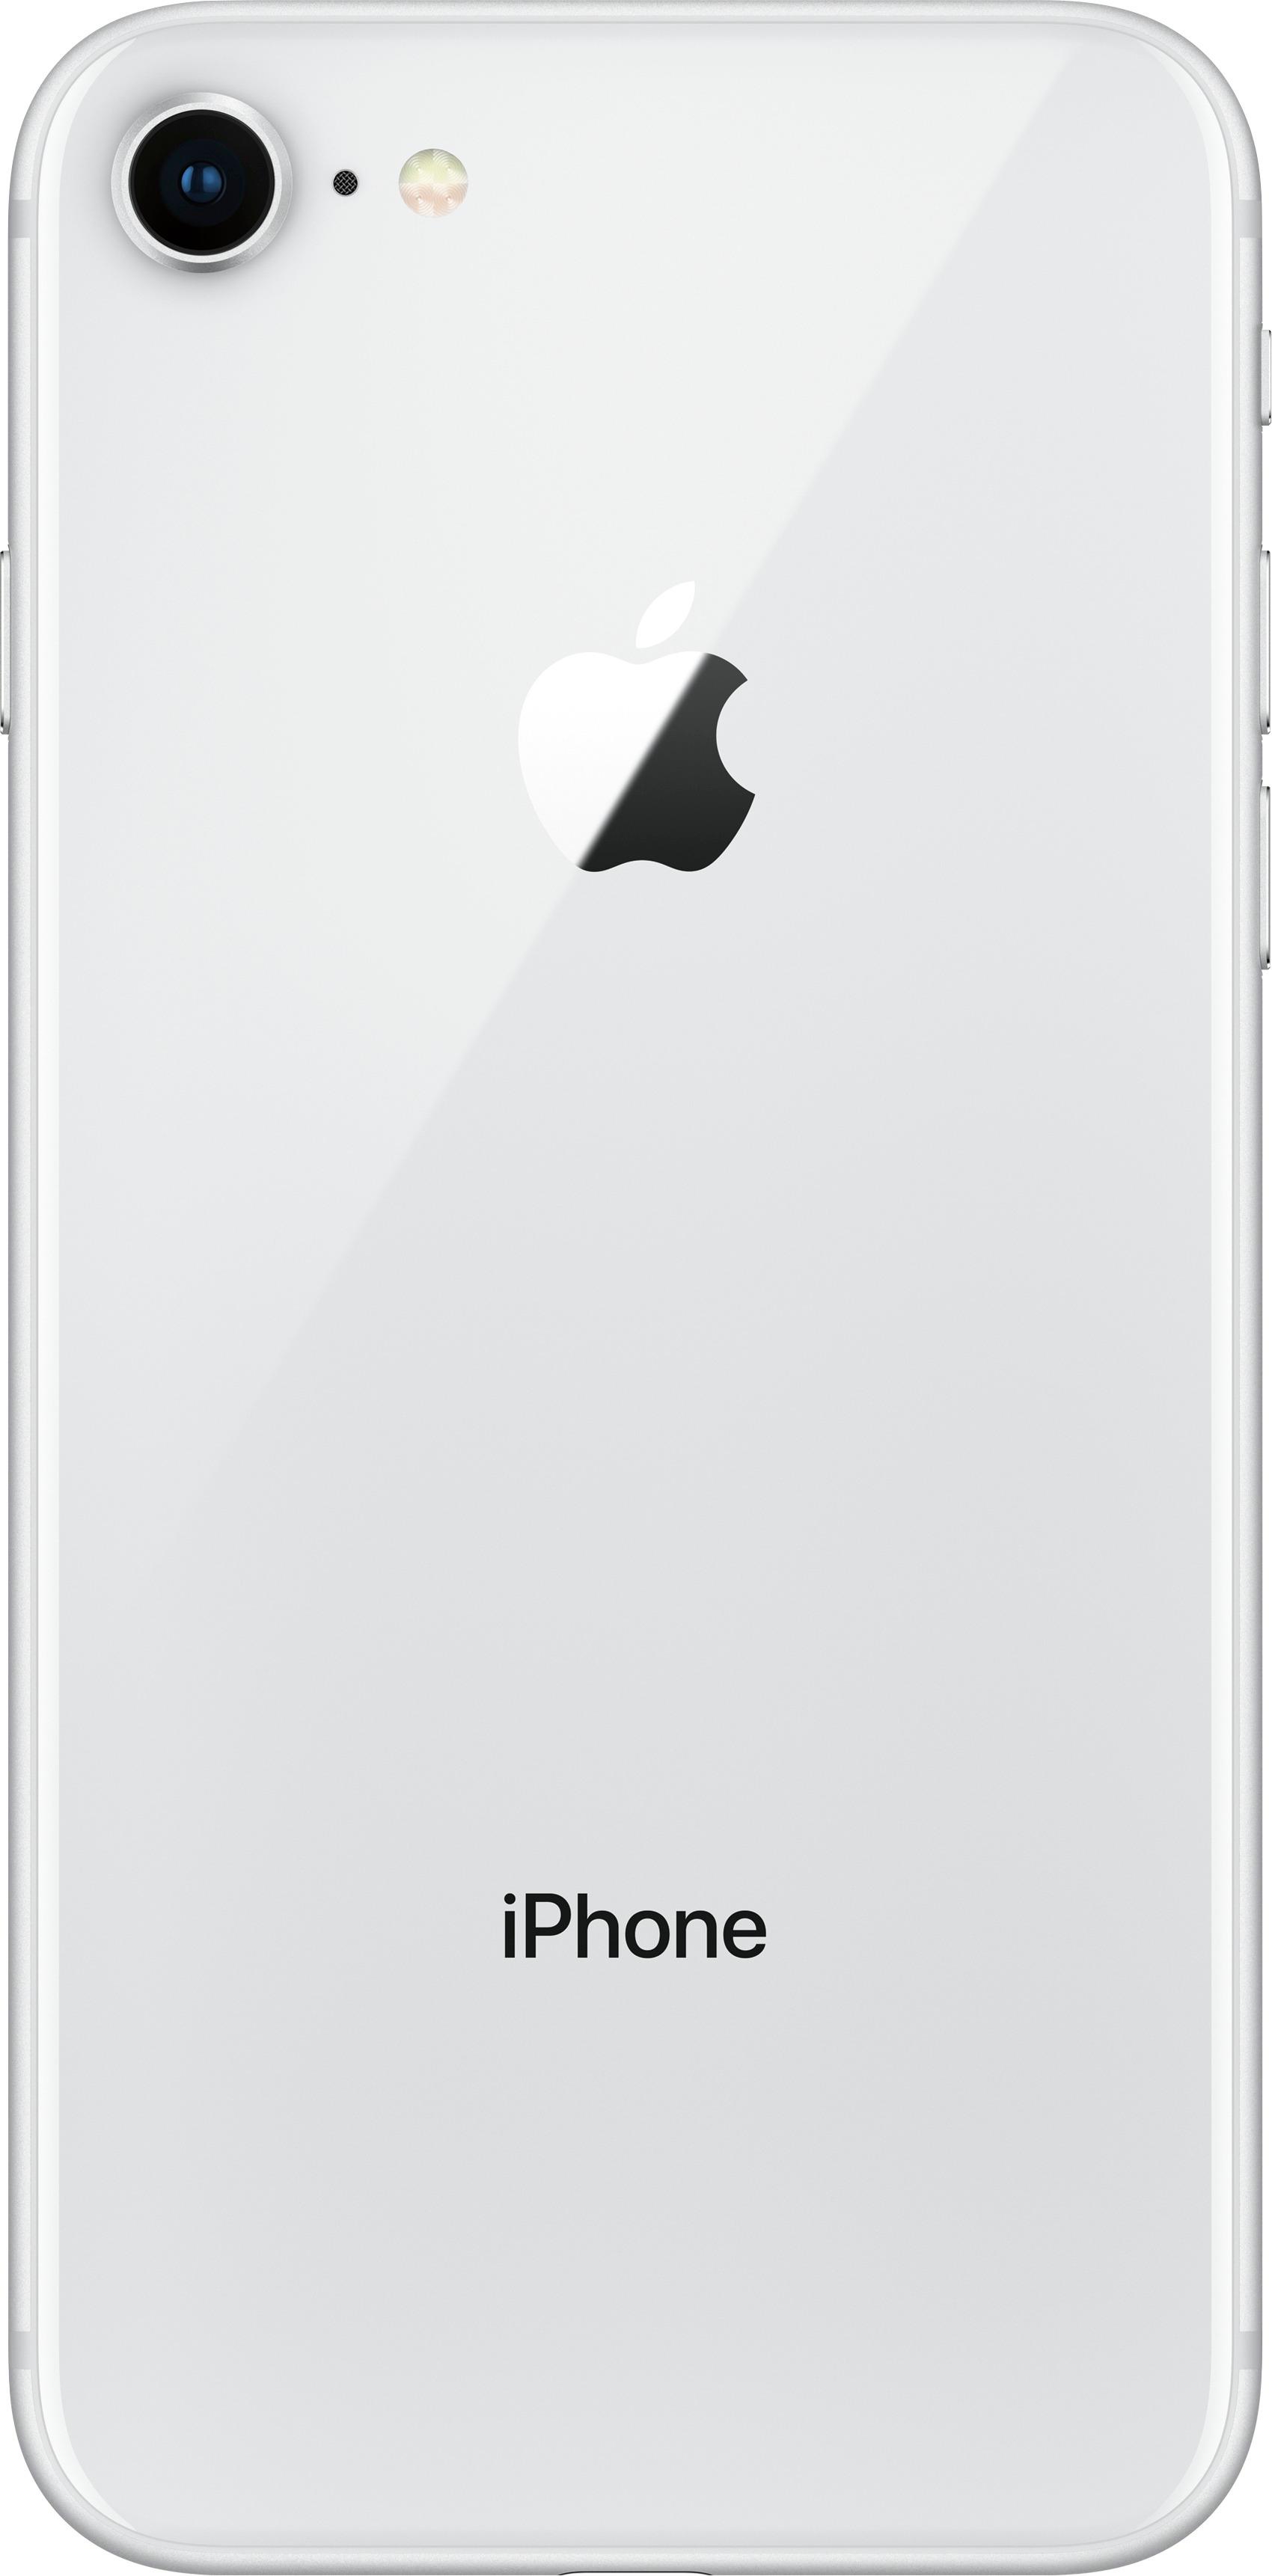 スマートフォン/携帯電話 スマートフォン本体 Best Buy: Apple iPhone 8 256GB Silver (AT&T) MQ7G2LL/A